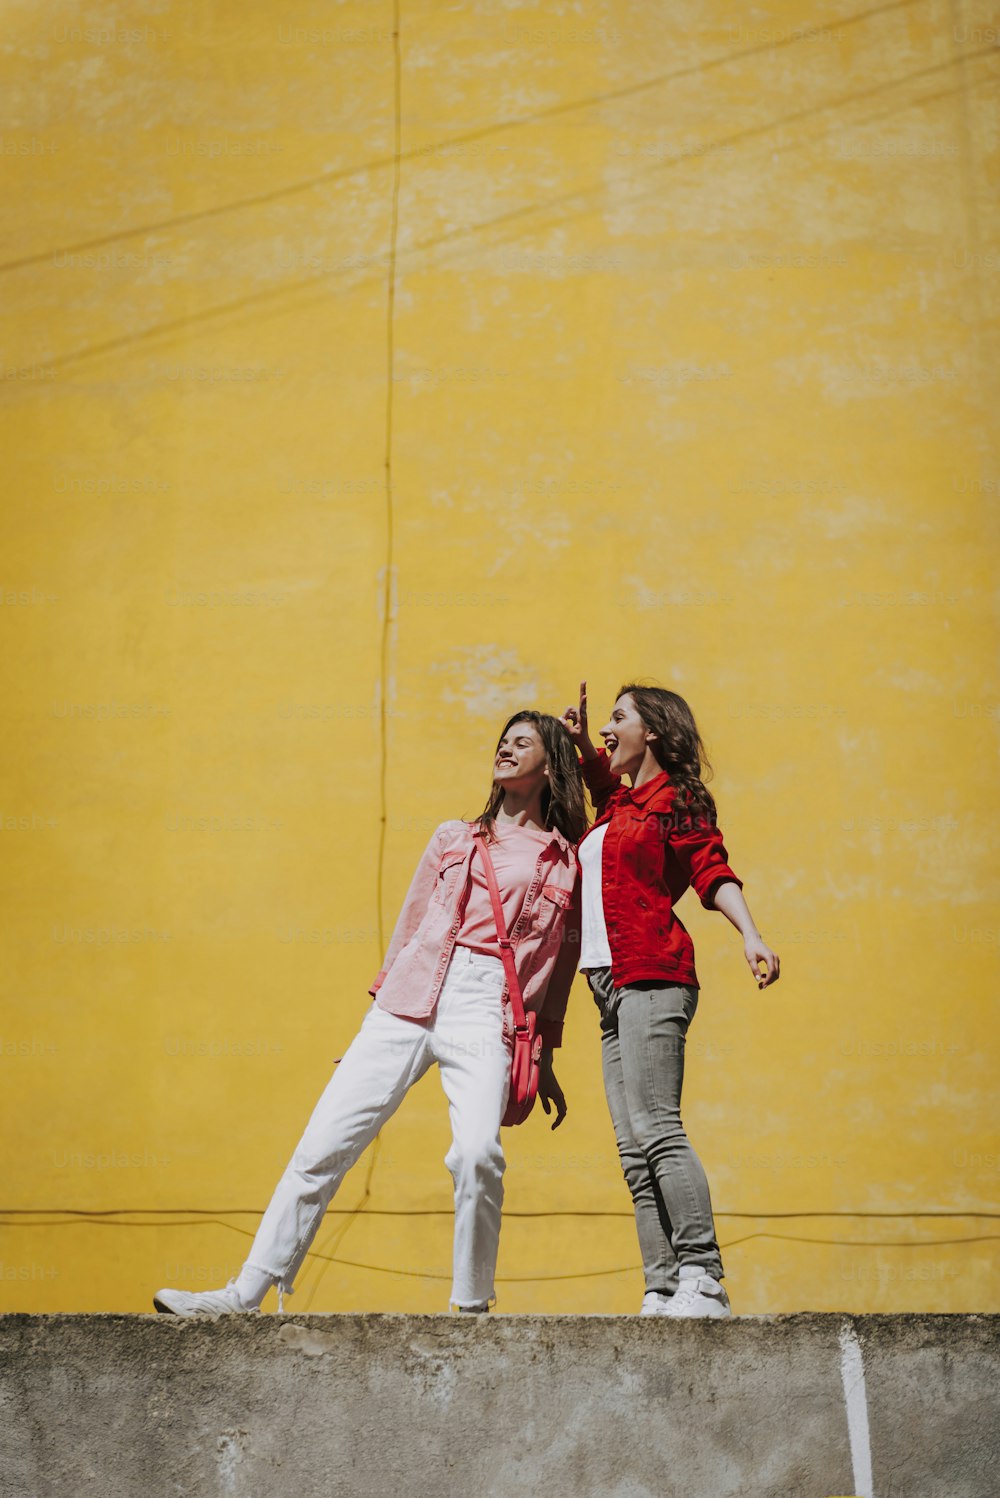 Conceito de estilo de vida urbano. Retrato de corpo inteiro de duas jovens mulheres hipster felizes que se divertem juntas enquanto permanecem no parapeito